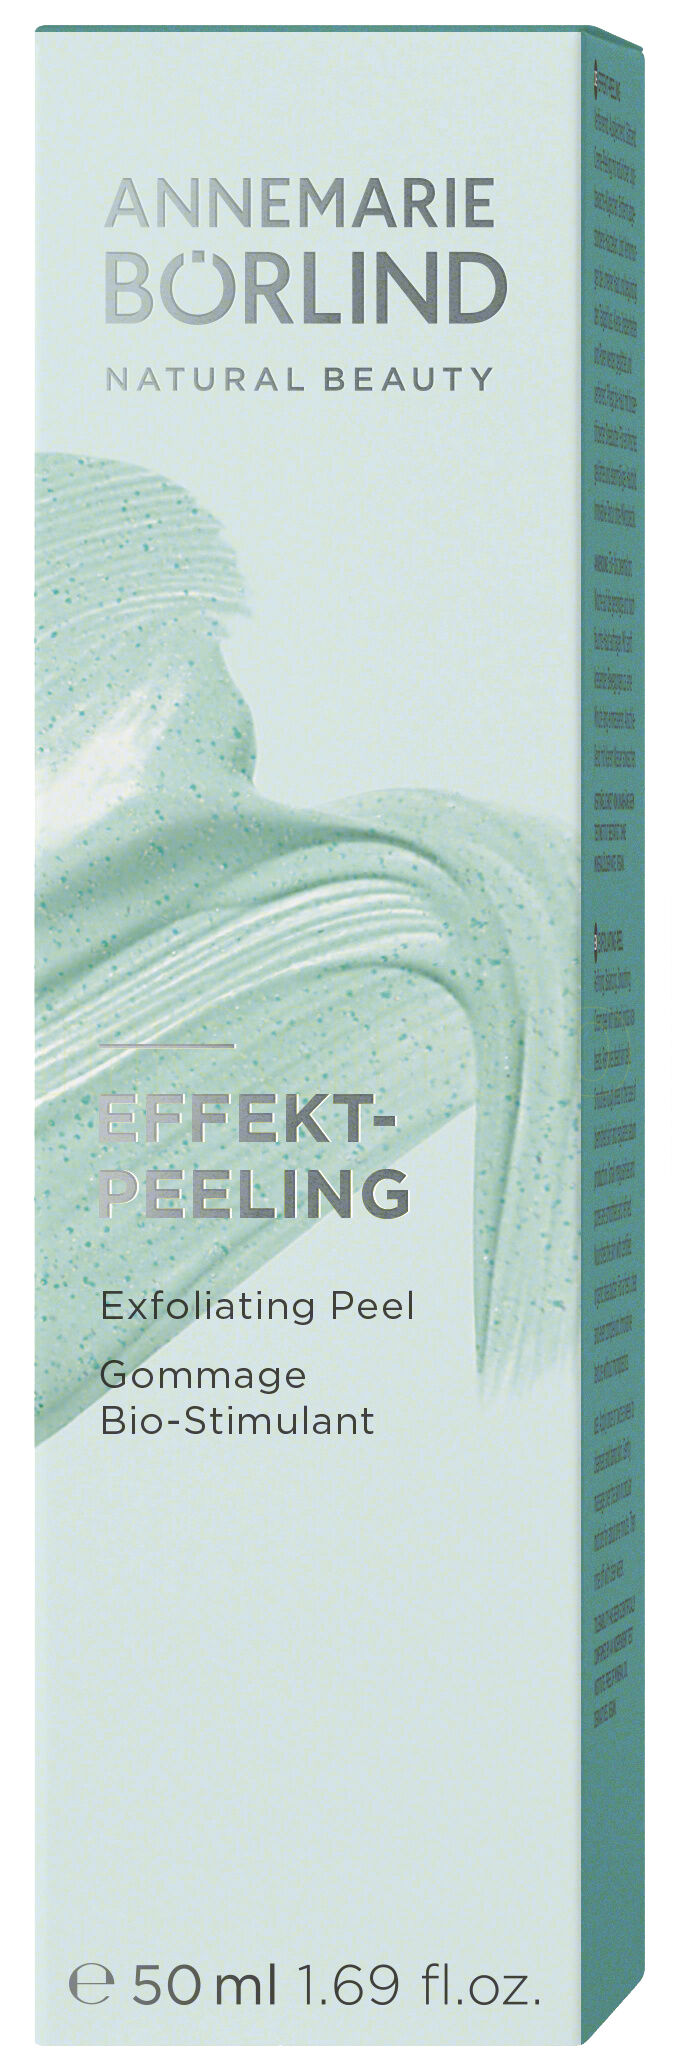 Annemarie Börlind Naturlig Exfoliating Peel - 50 ml